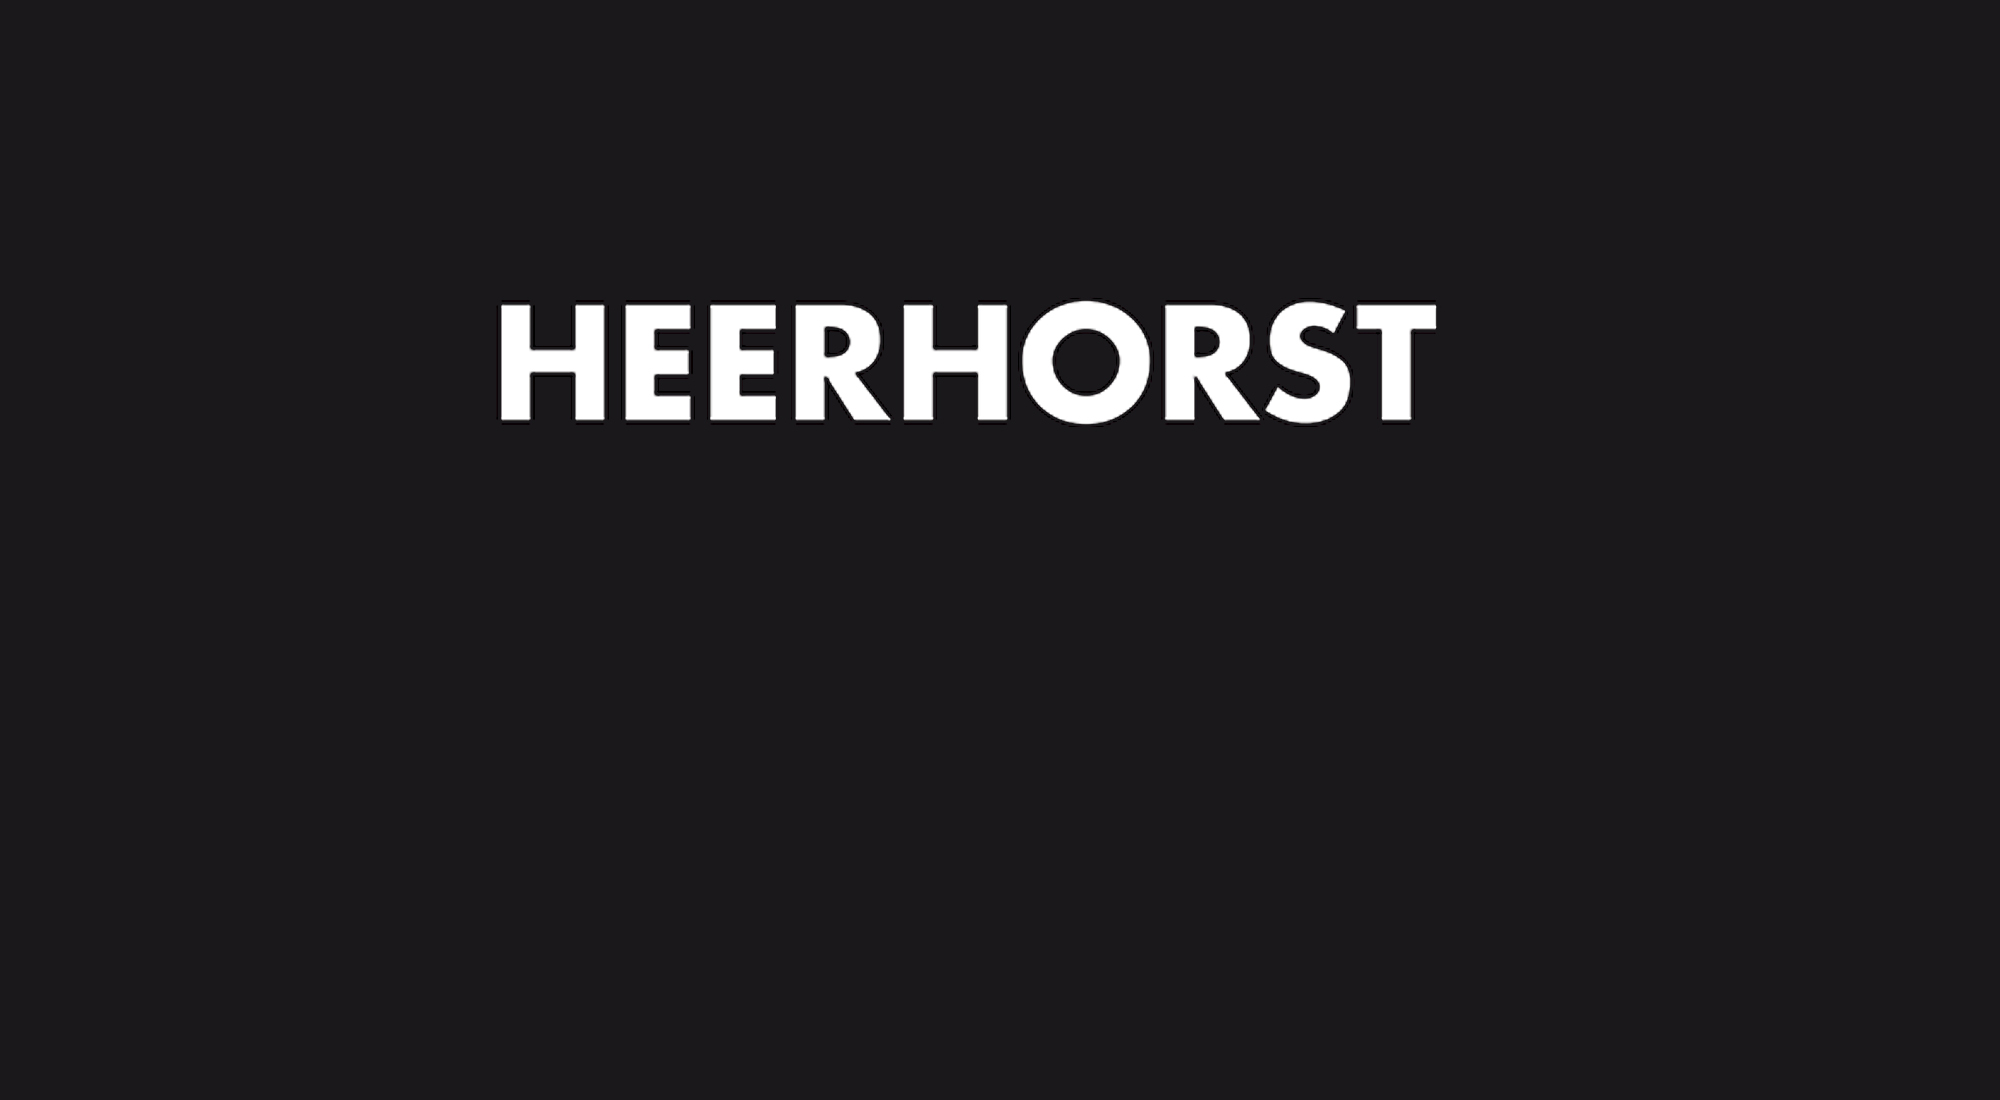 Heerhorst